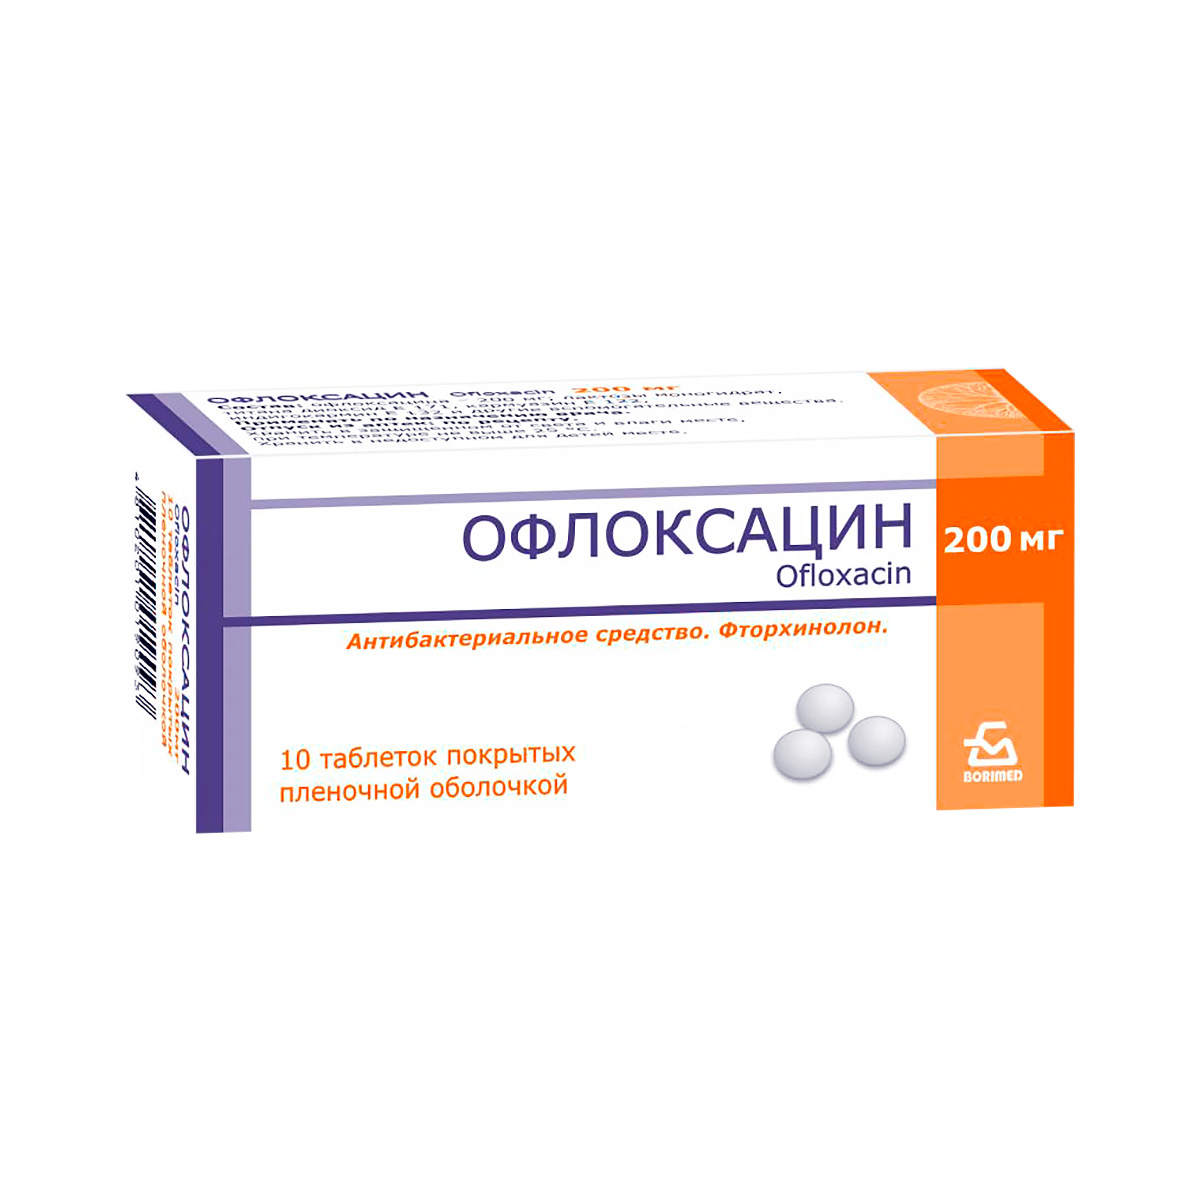 Офлоксацин 200 мг таблетки покрытые пленочной оболочкой 10 шт